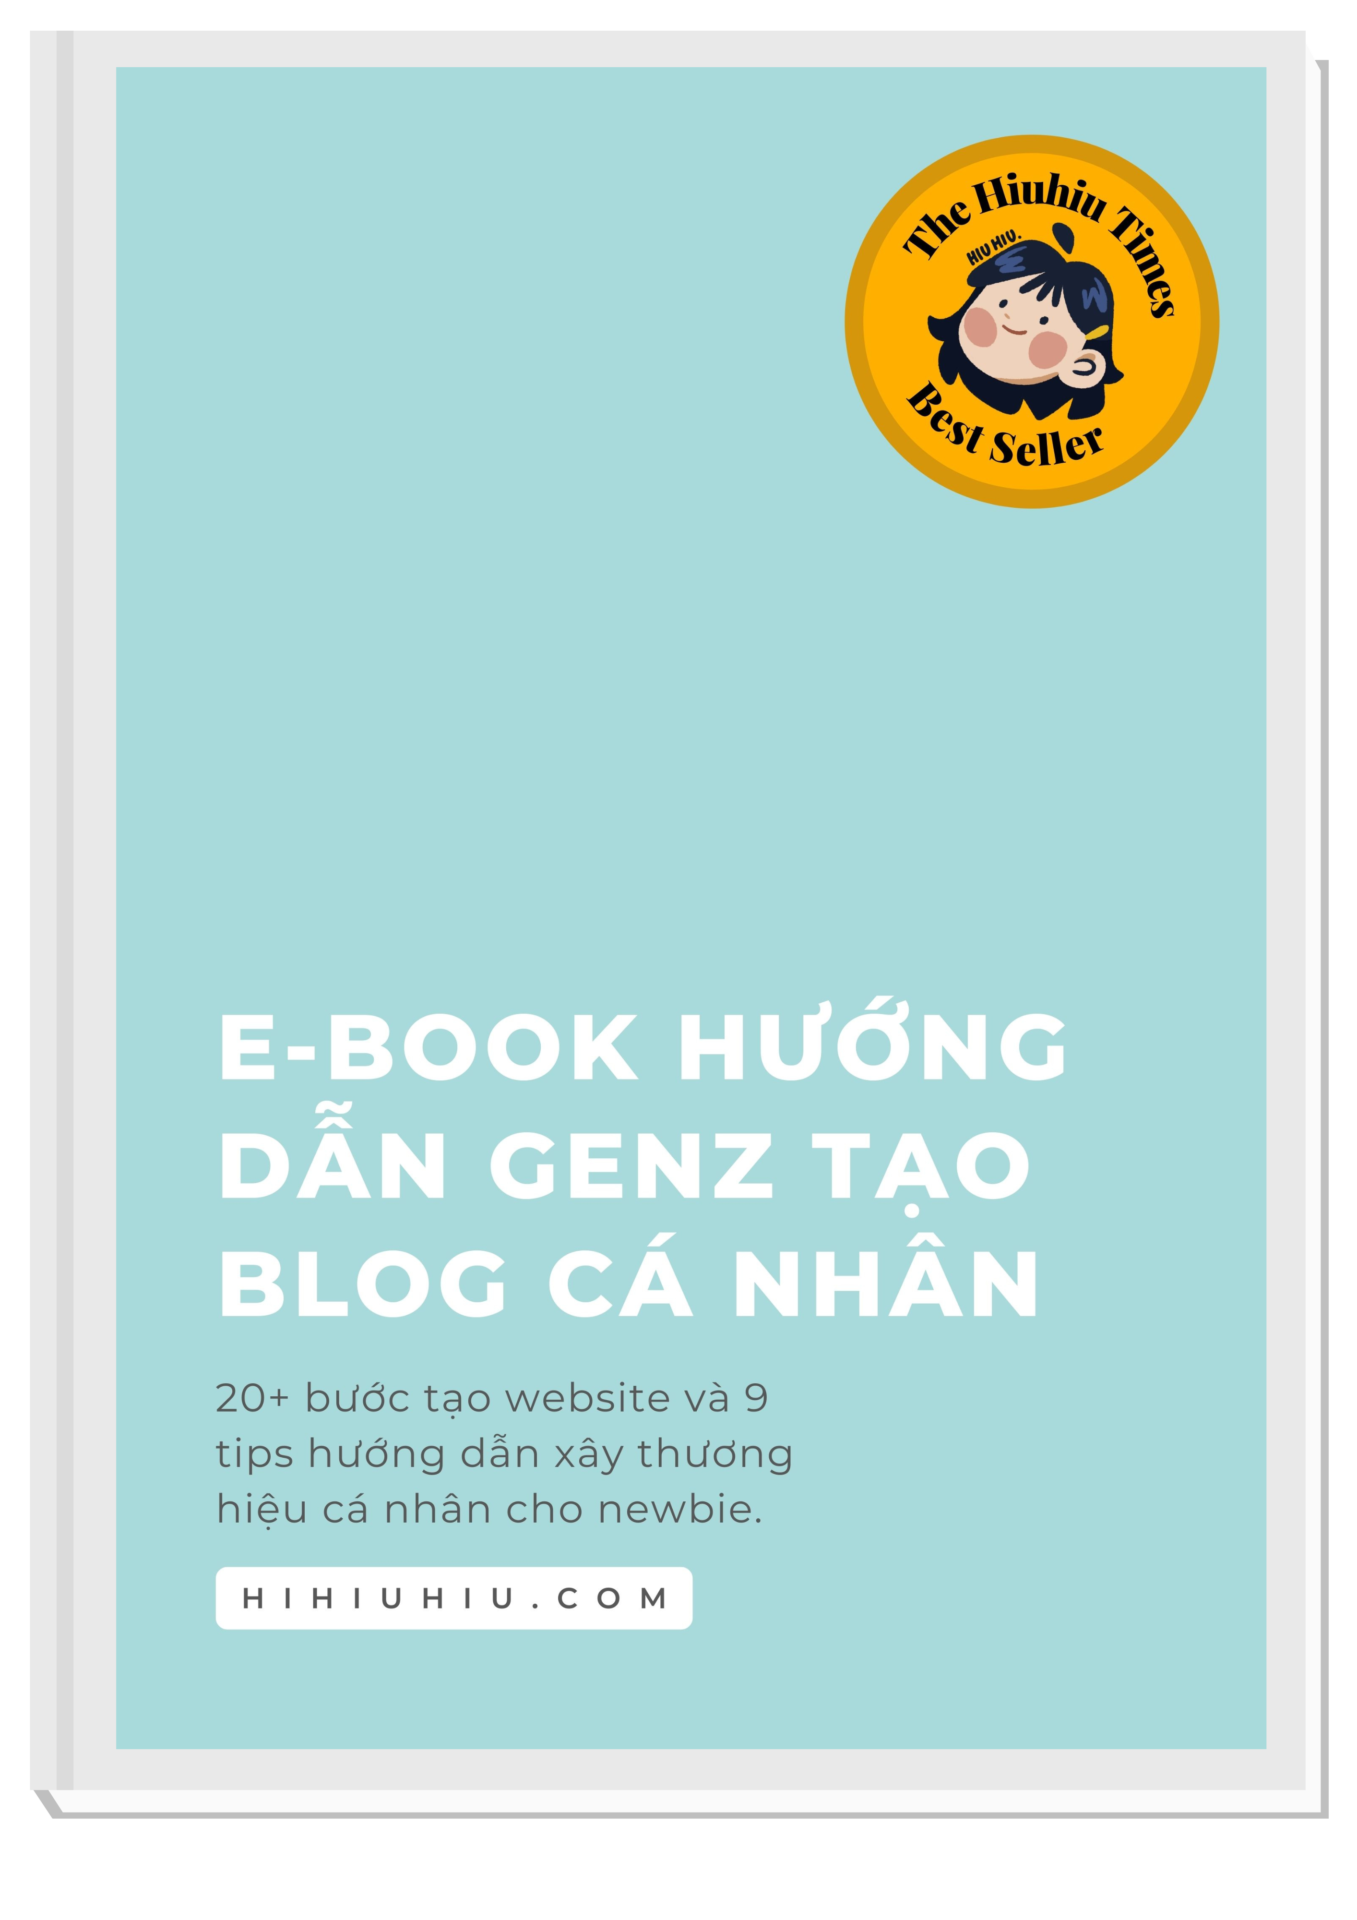 Copy of E-Book HiHiuHiu